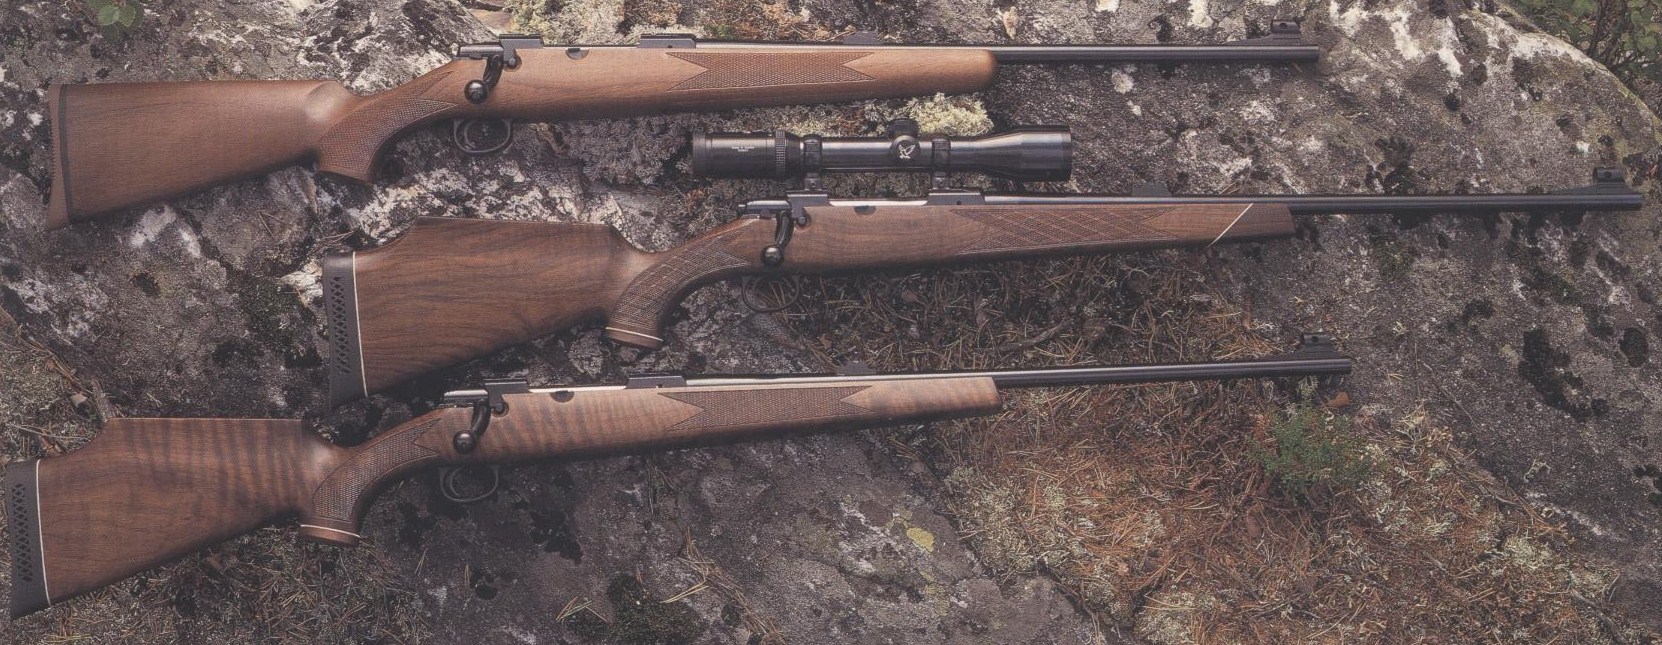 ./guns/rifle/bilder/Rifle-Kongsberg-Lakelander-389-Jakt-1.JPG